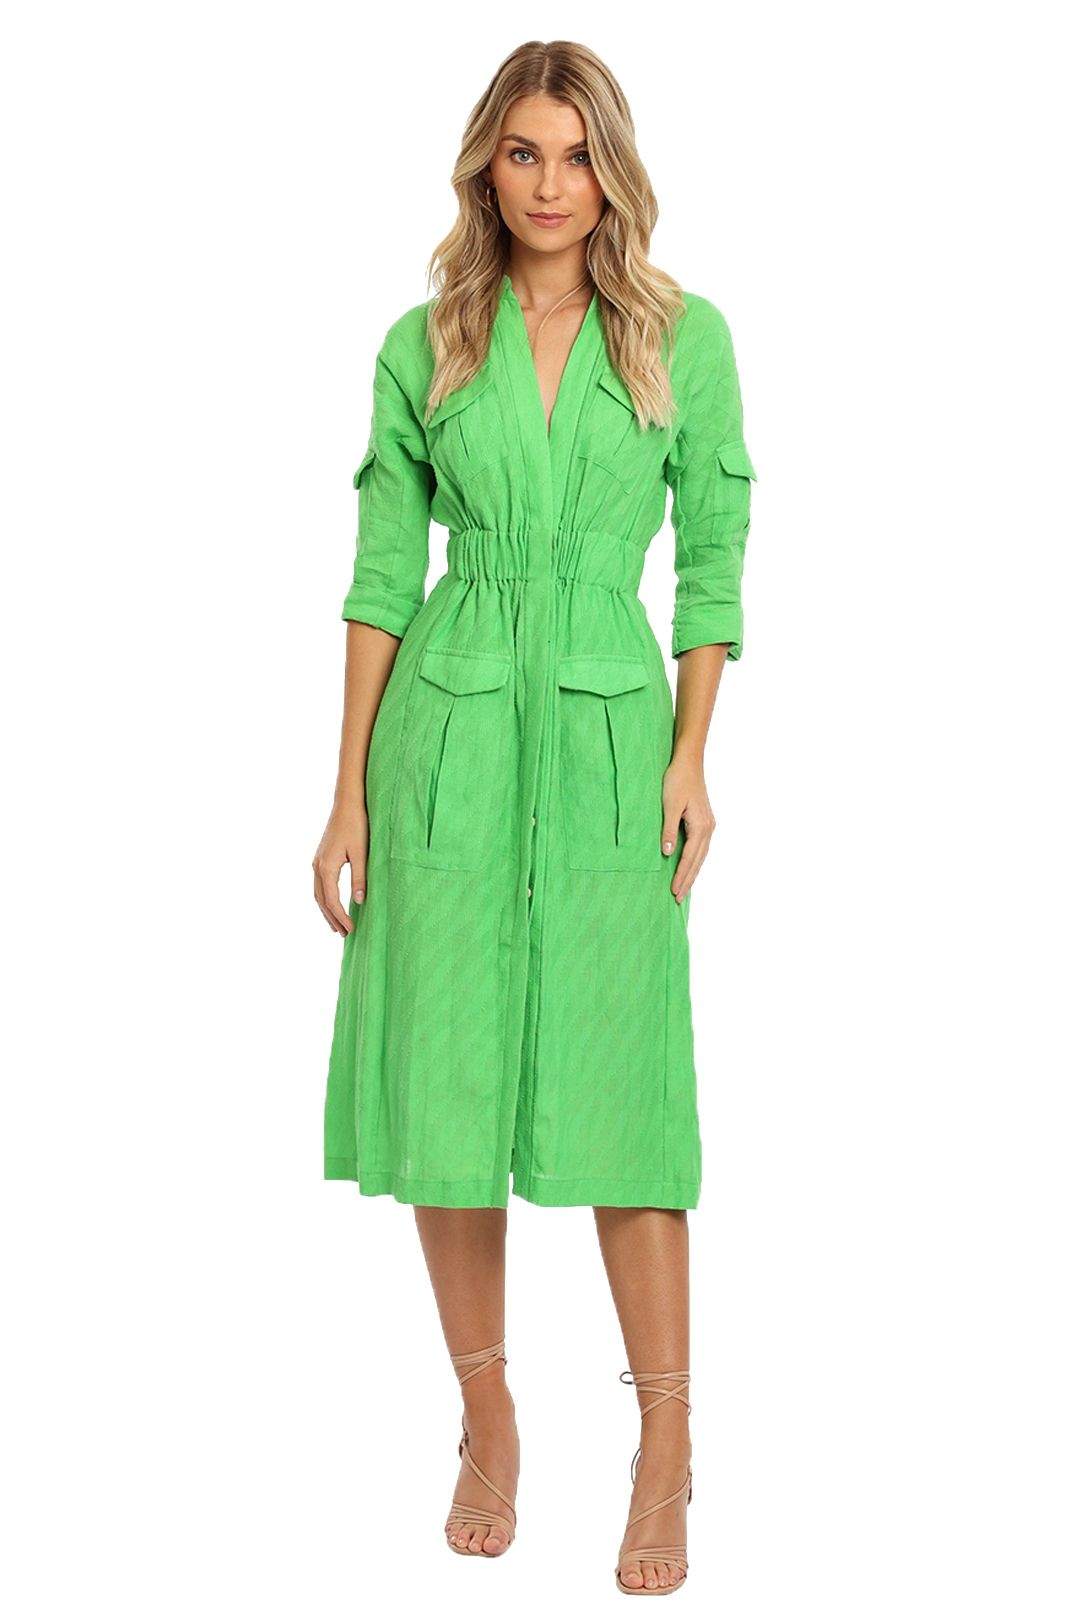 KITX Linen Safari Dress Green